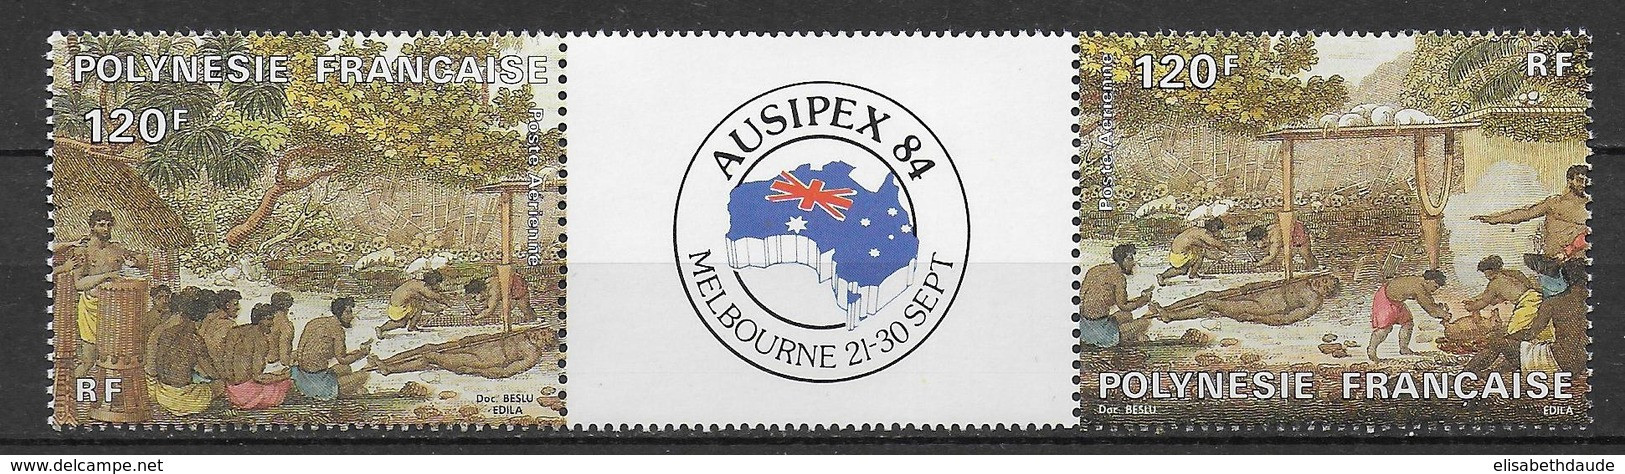 POLYNESIE - 1984 - PORT GRATUIT A PARTIR DE 5 EUR D'ACHAT - POSTE AERIENNE - YVERT N° 185A ** MNH - COTE = 10 EUR. - - Unused Stamps